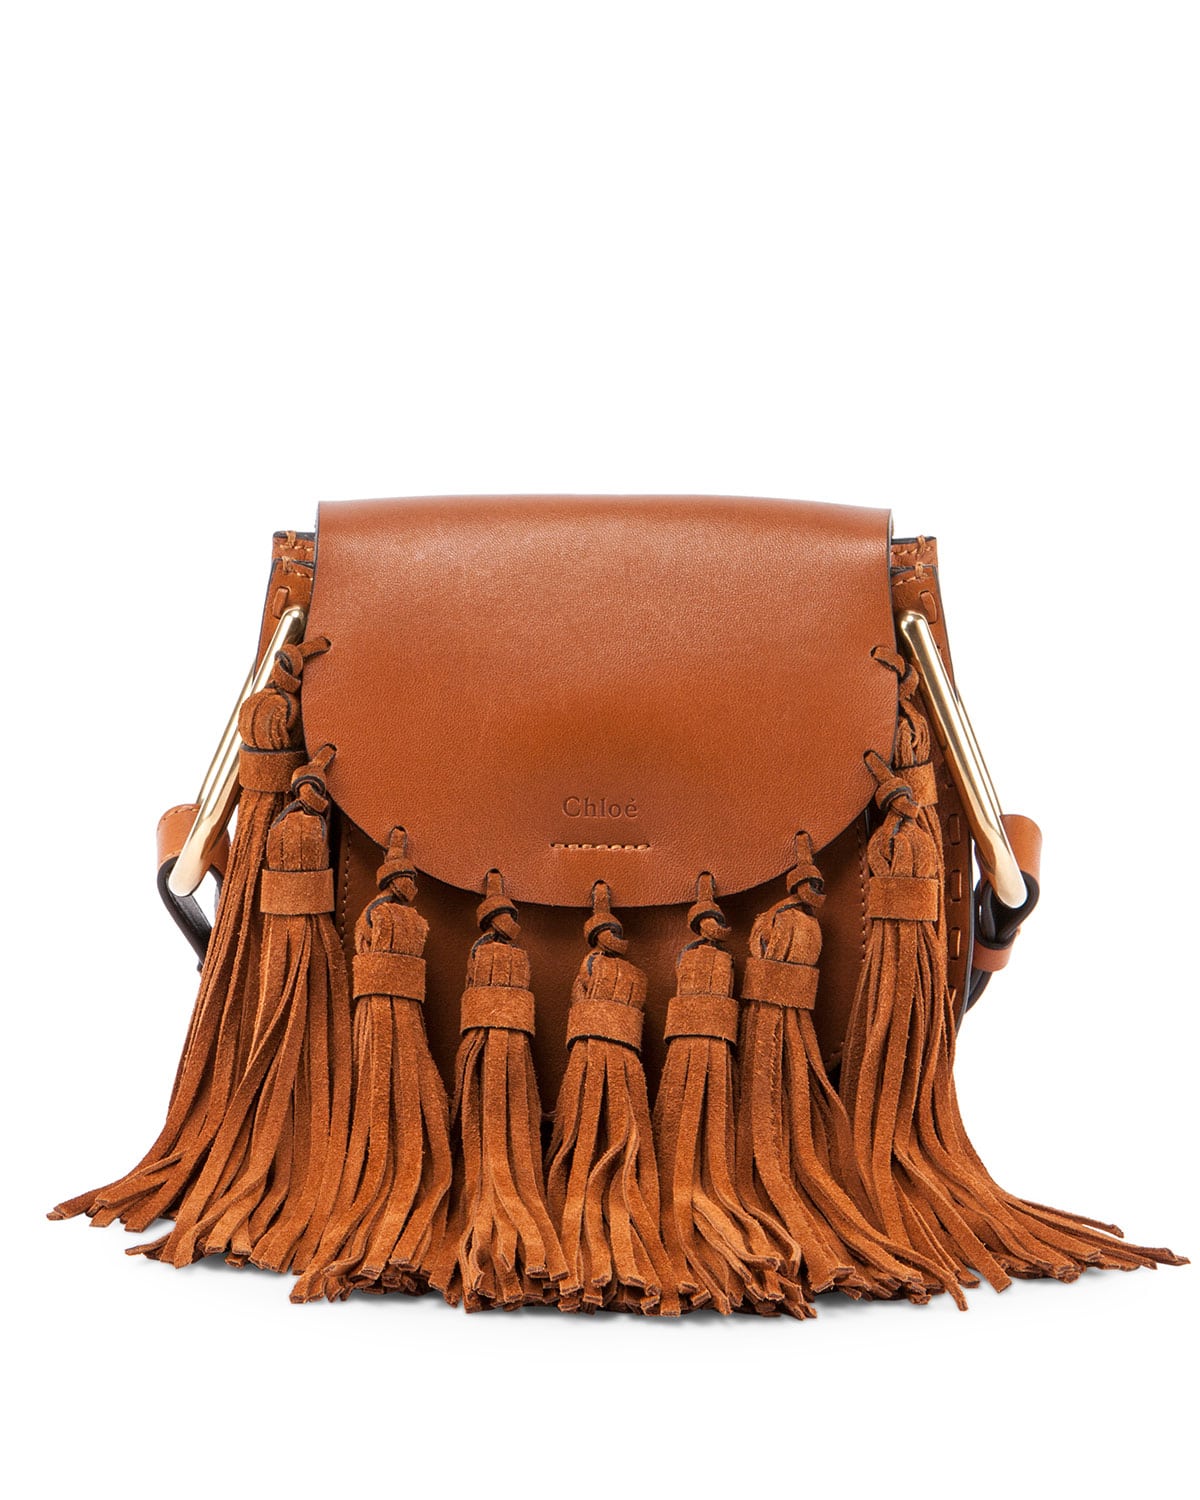 chloe handbags fall winter 2016